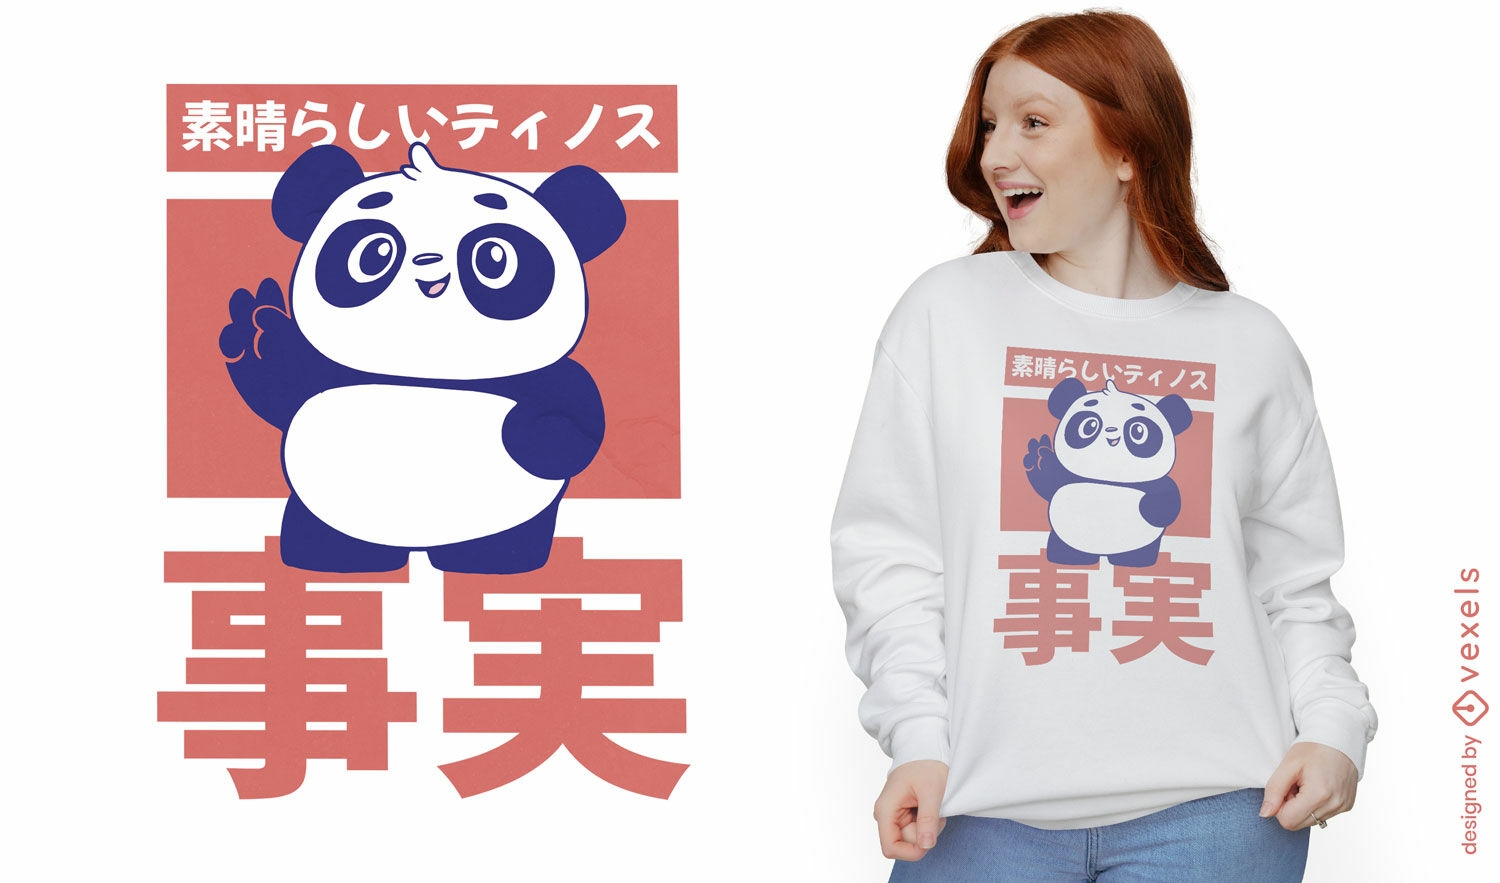 Cute little panda t-shirt design